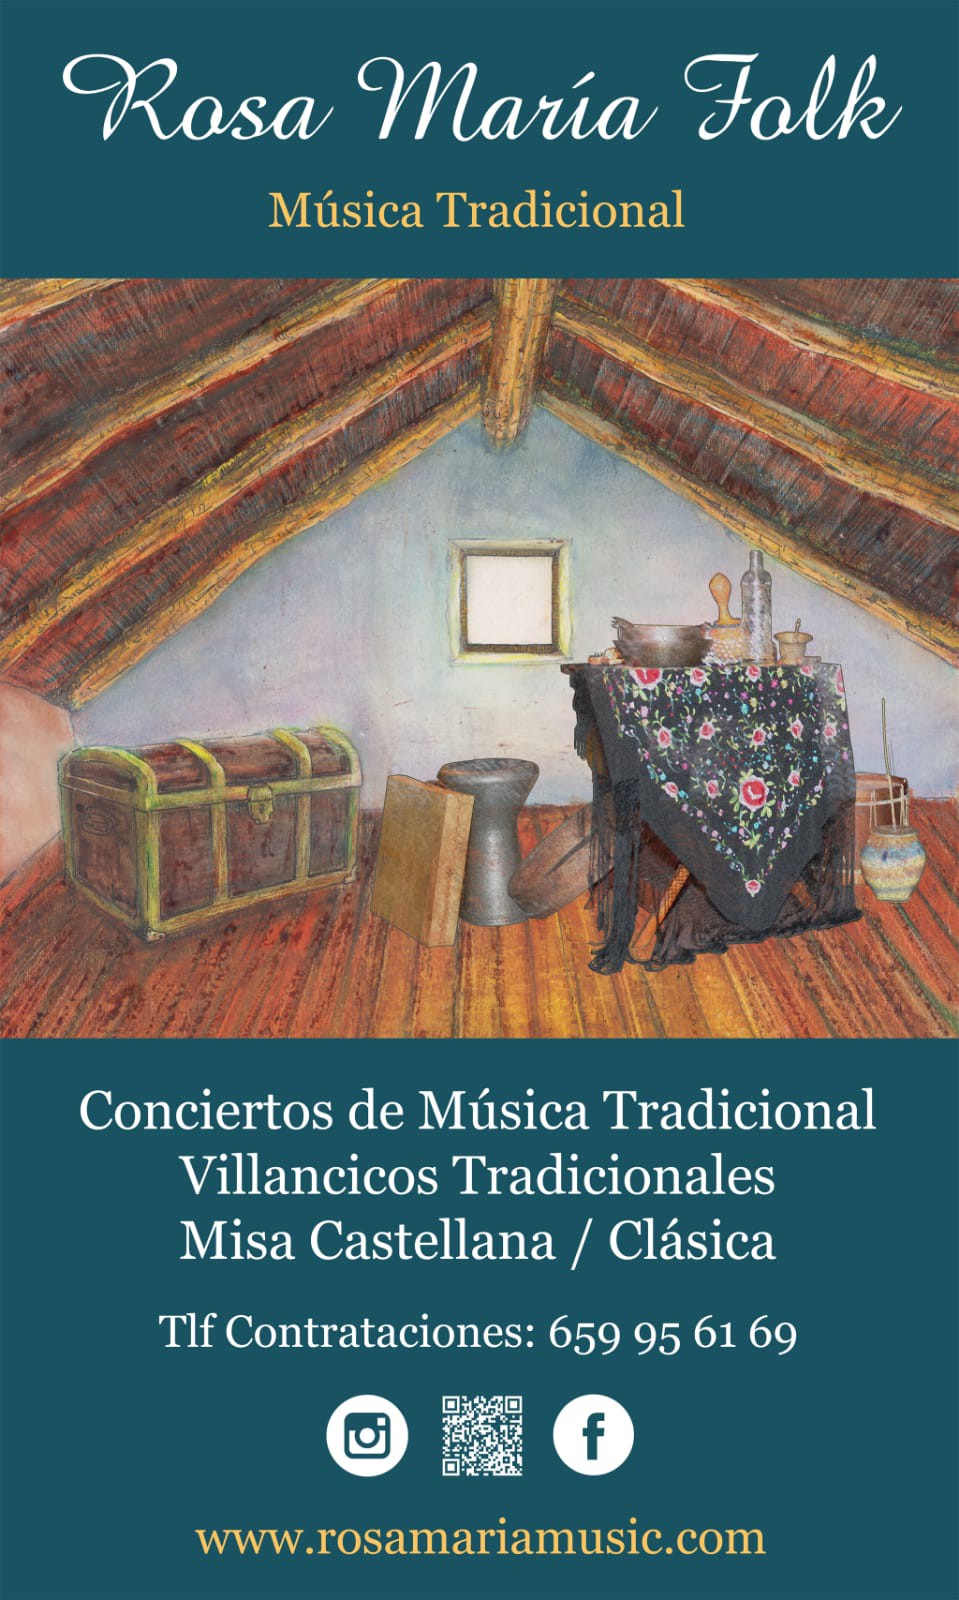 Concierto de Villancicos Tradicioanles en Ciudad Rodrigo 